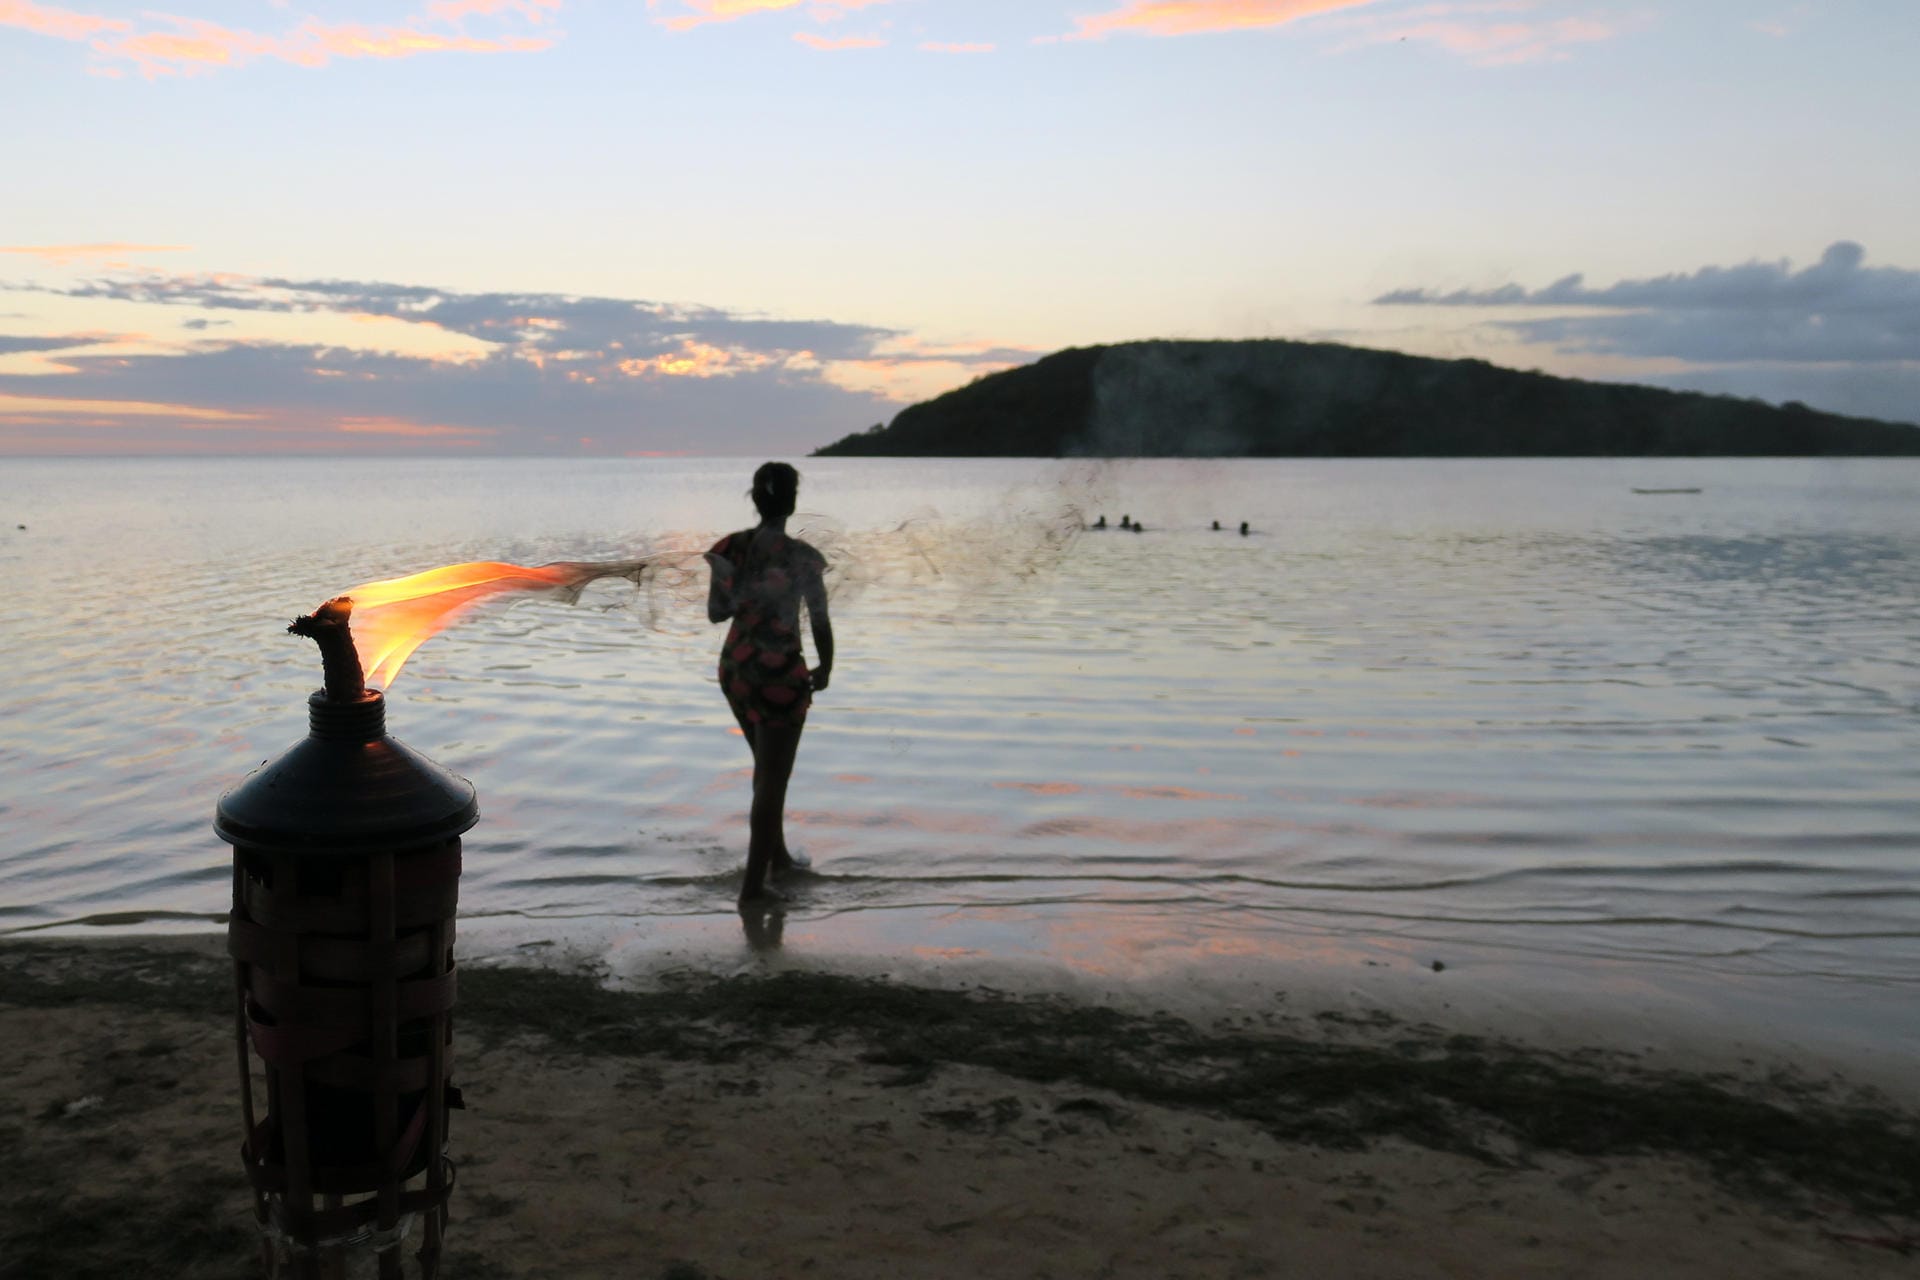 Fackeln erleuchten den Strand auf Mauritius am Rande des "Sware Tipik", einer traditionellen Musikveranstaltung mit Tanz.